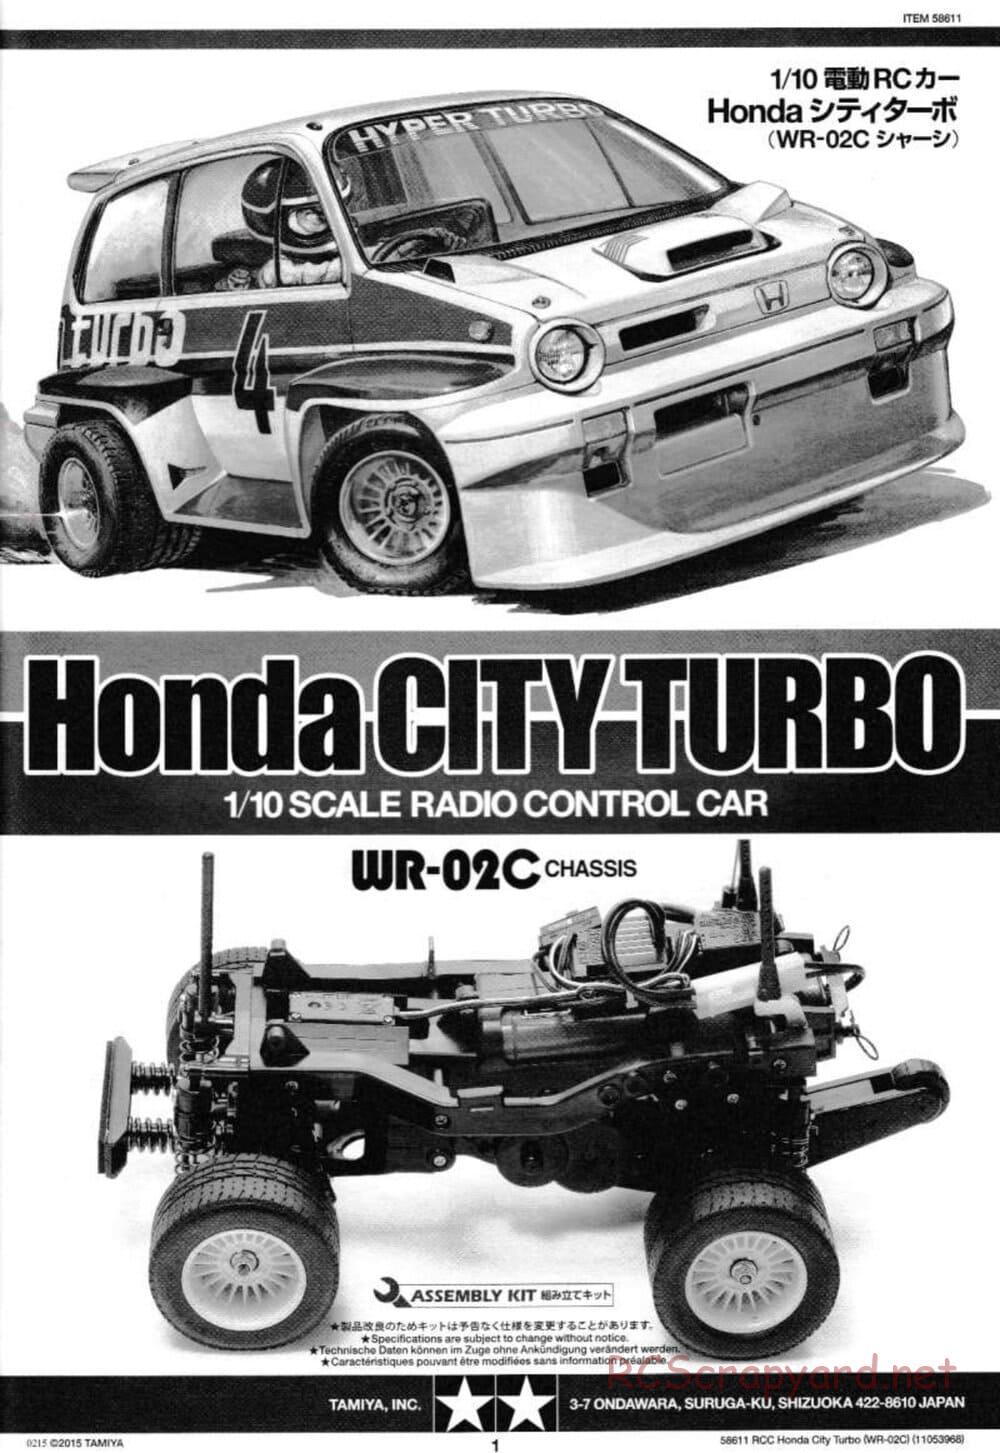 Tamiya - Honda City Turbo - WR-02C Chassis - Manual - Page 1